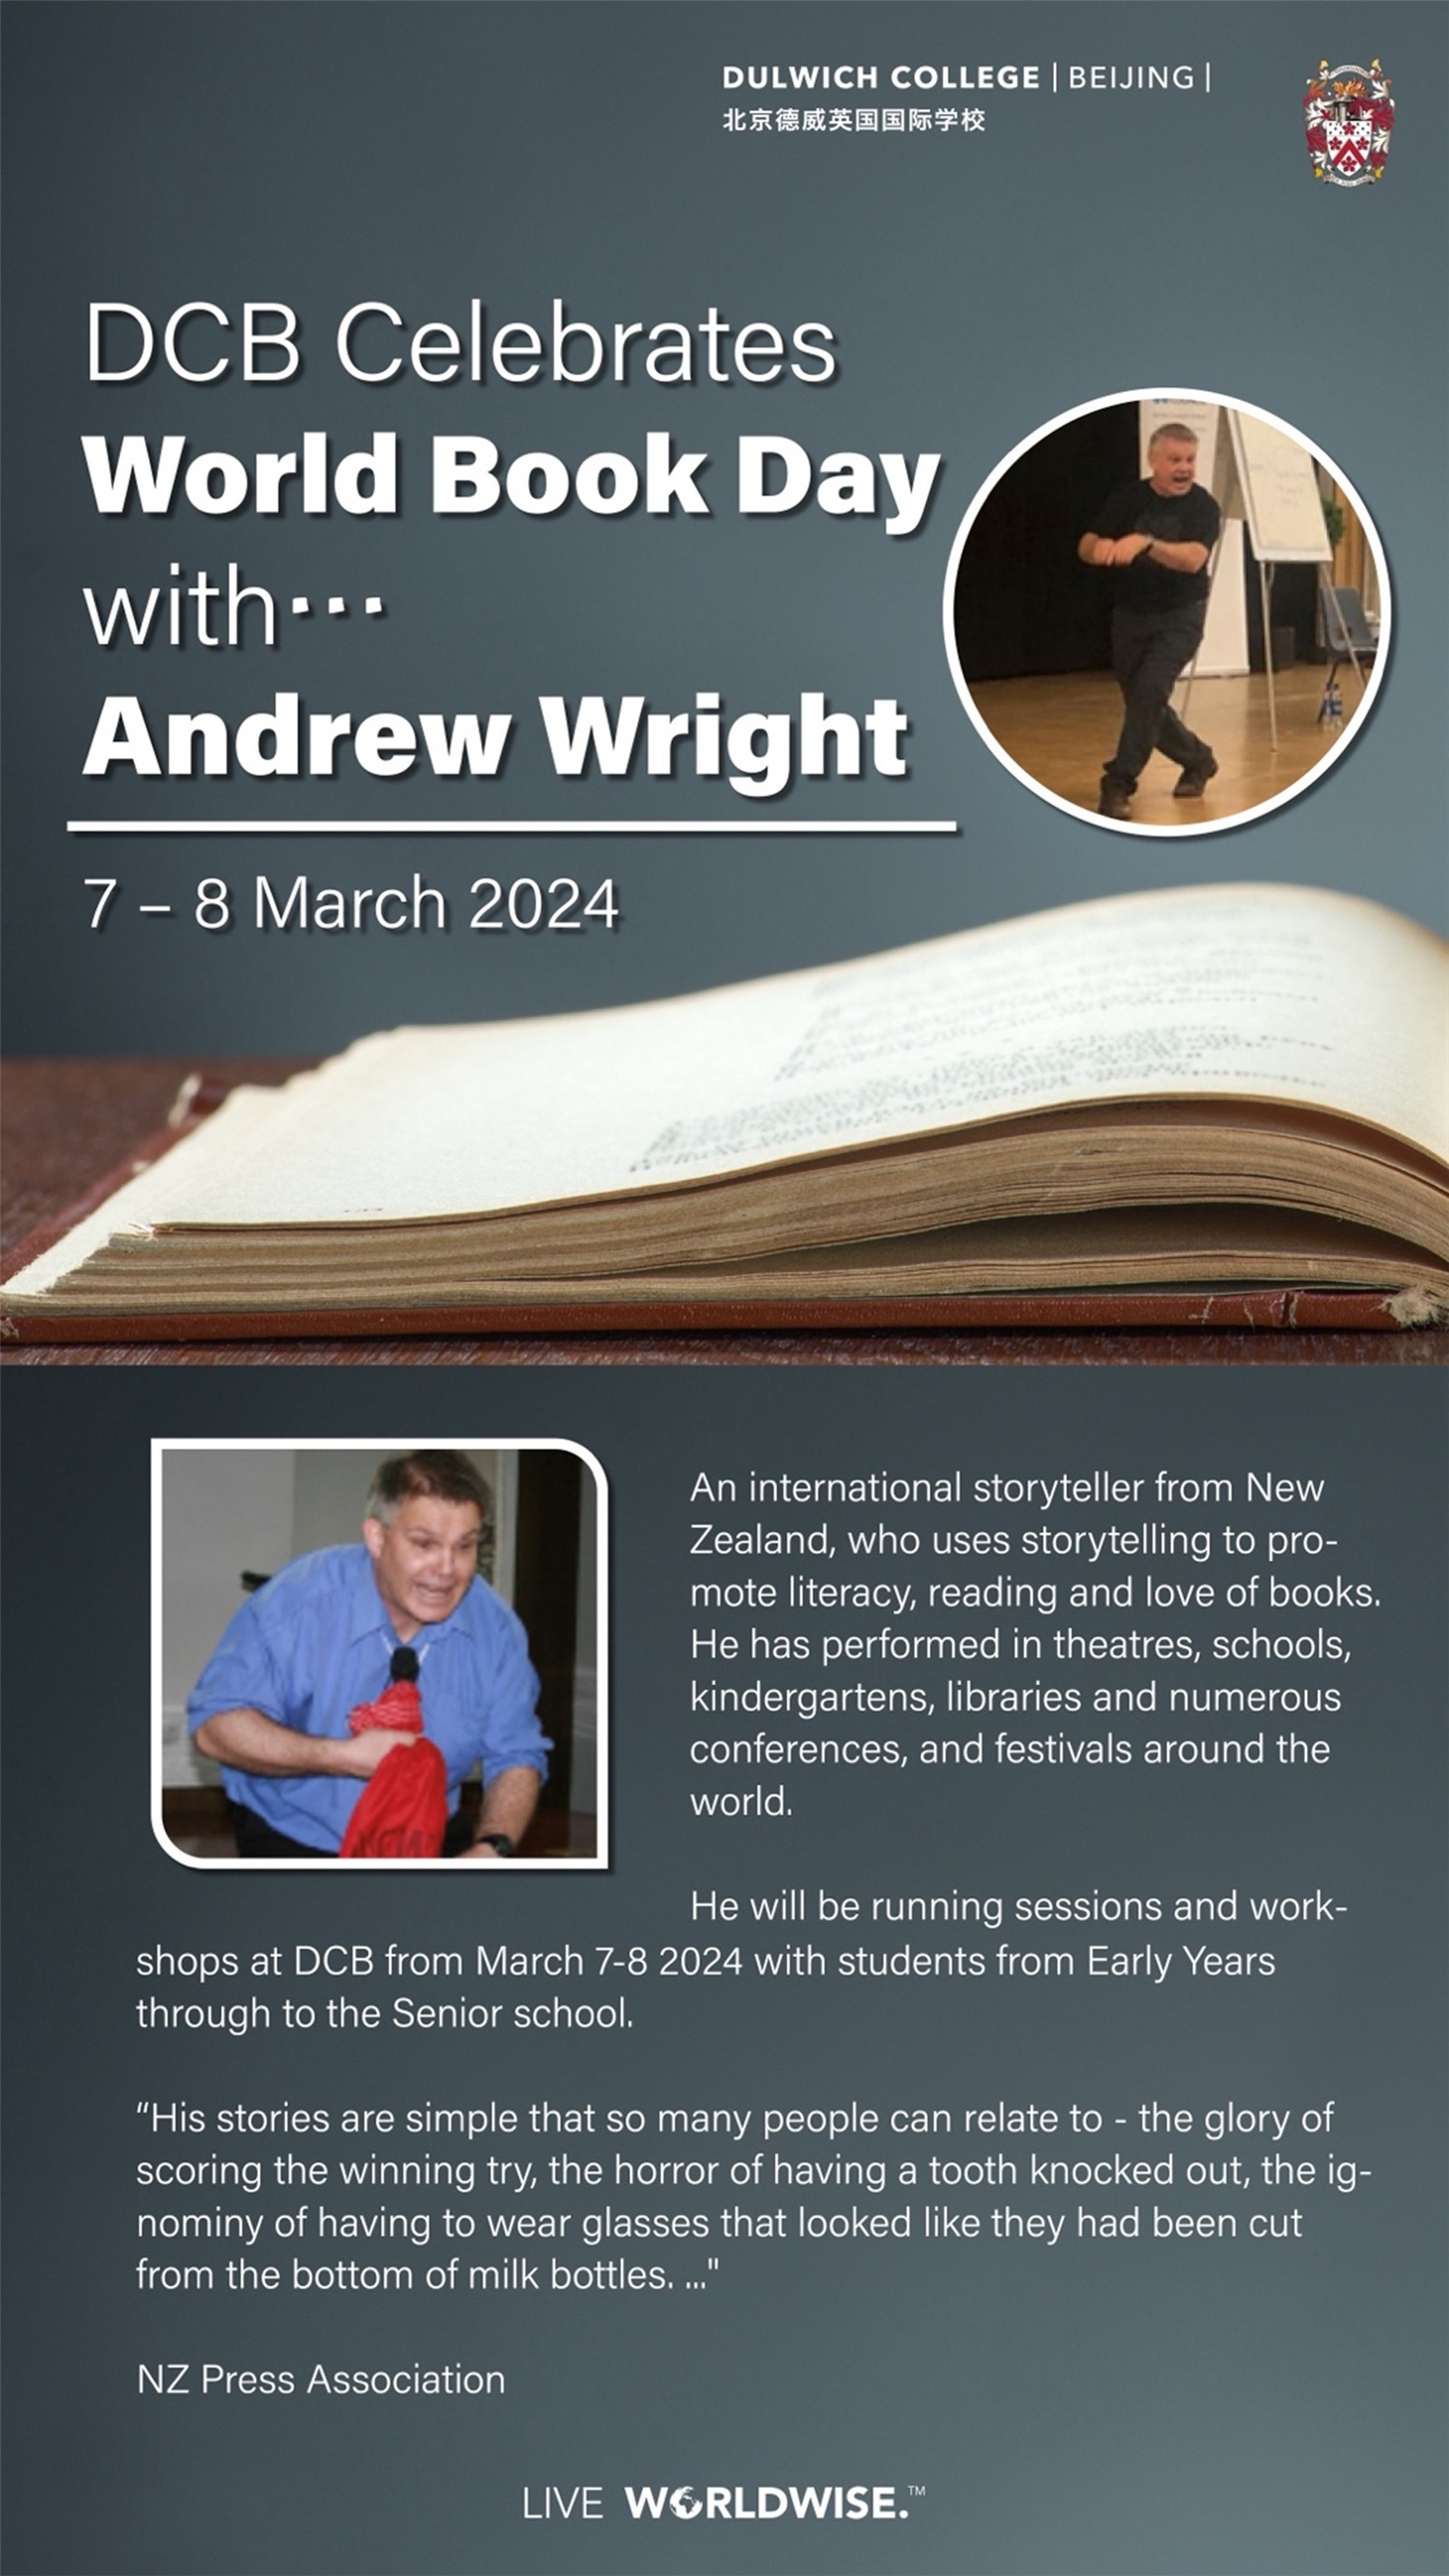 Andrew Wright